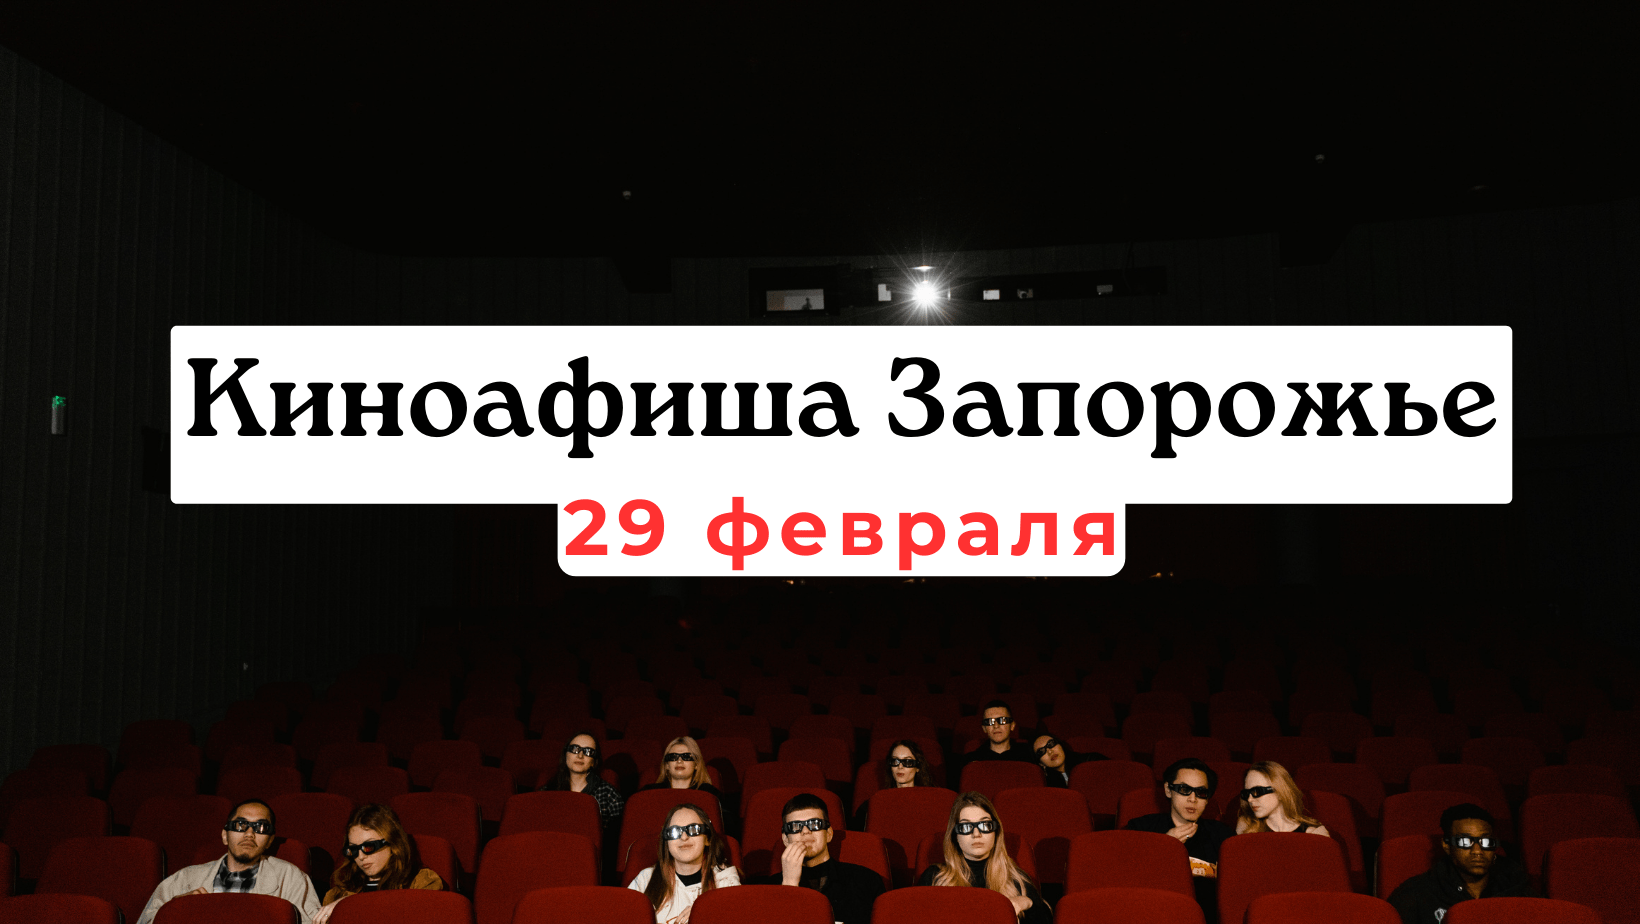 Что показывают в кинотеатрах Запорожья: киноафиша 29 февраля